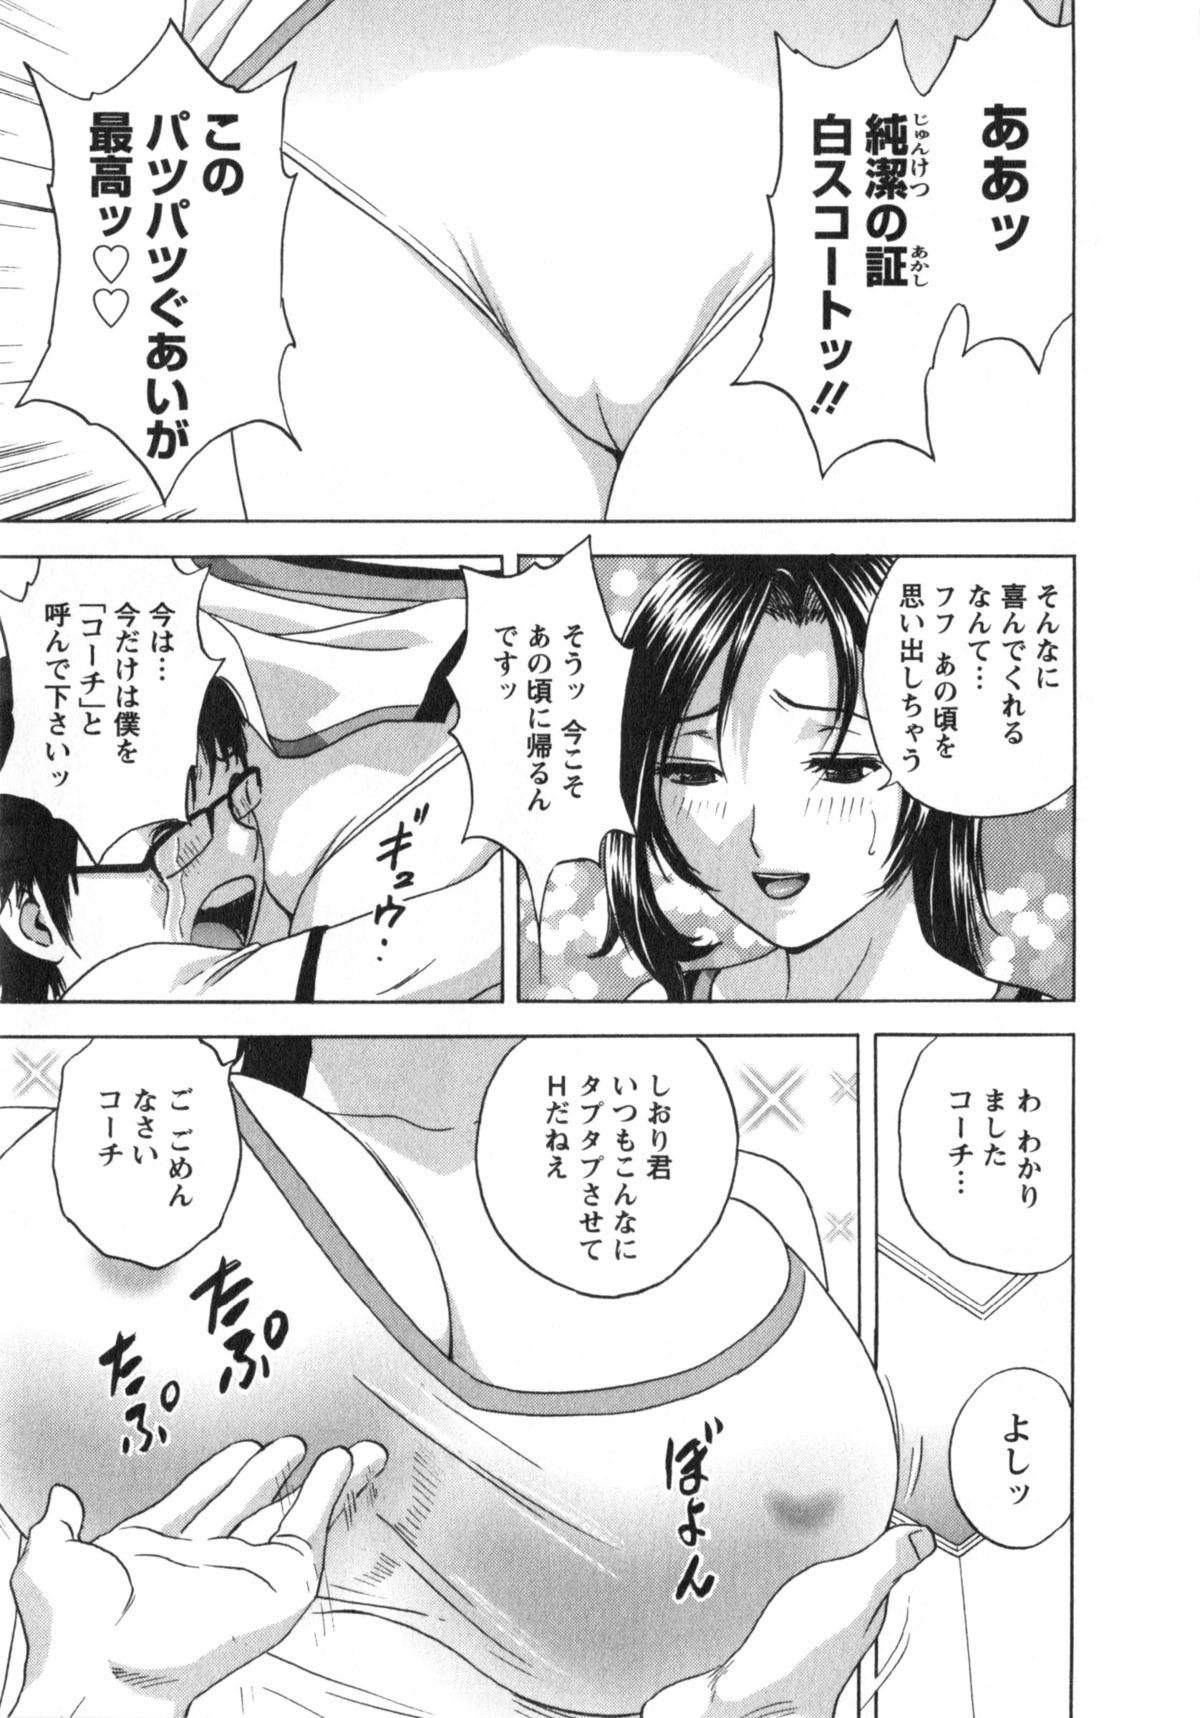 Manga no youna Hitozuma to no Hibi - Days with Married Women such as Comics. 87